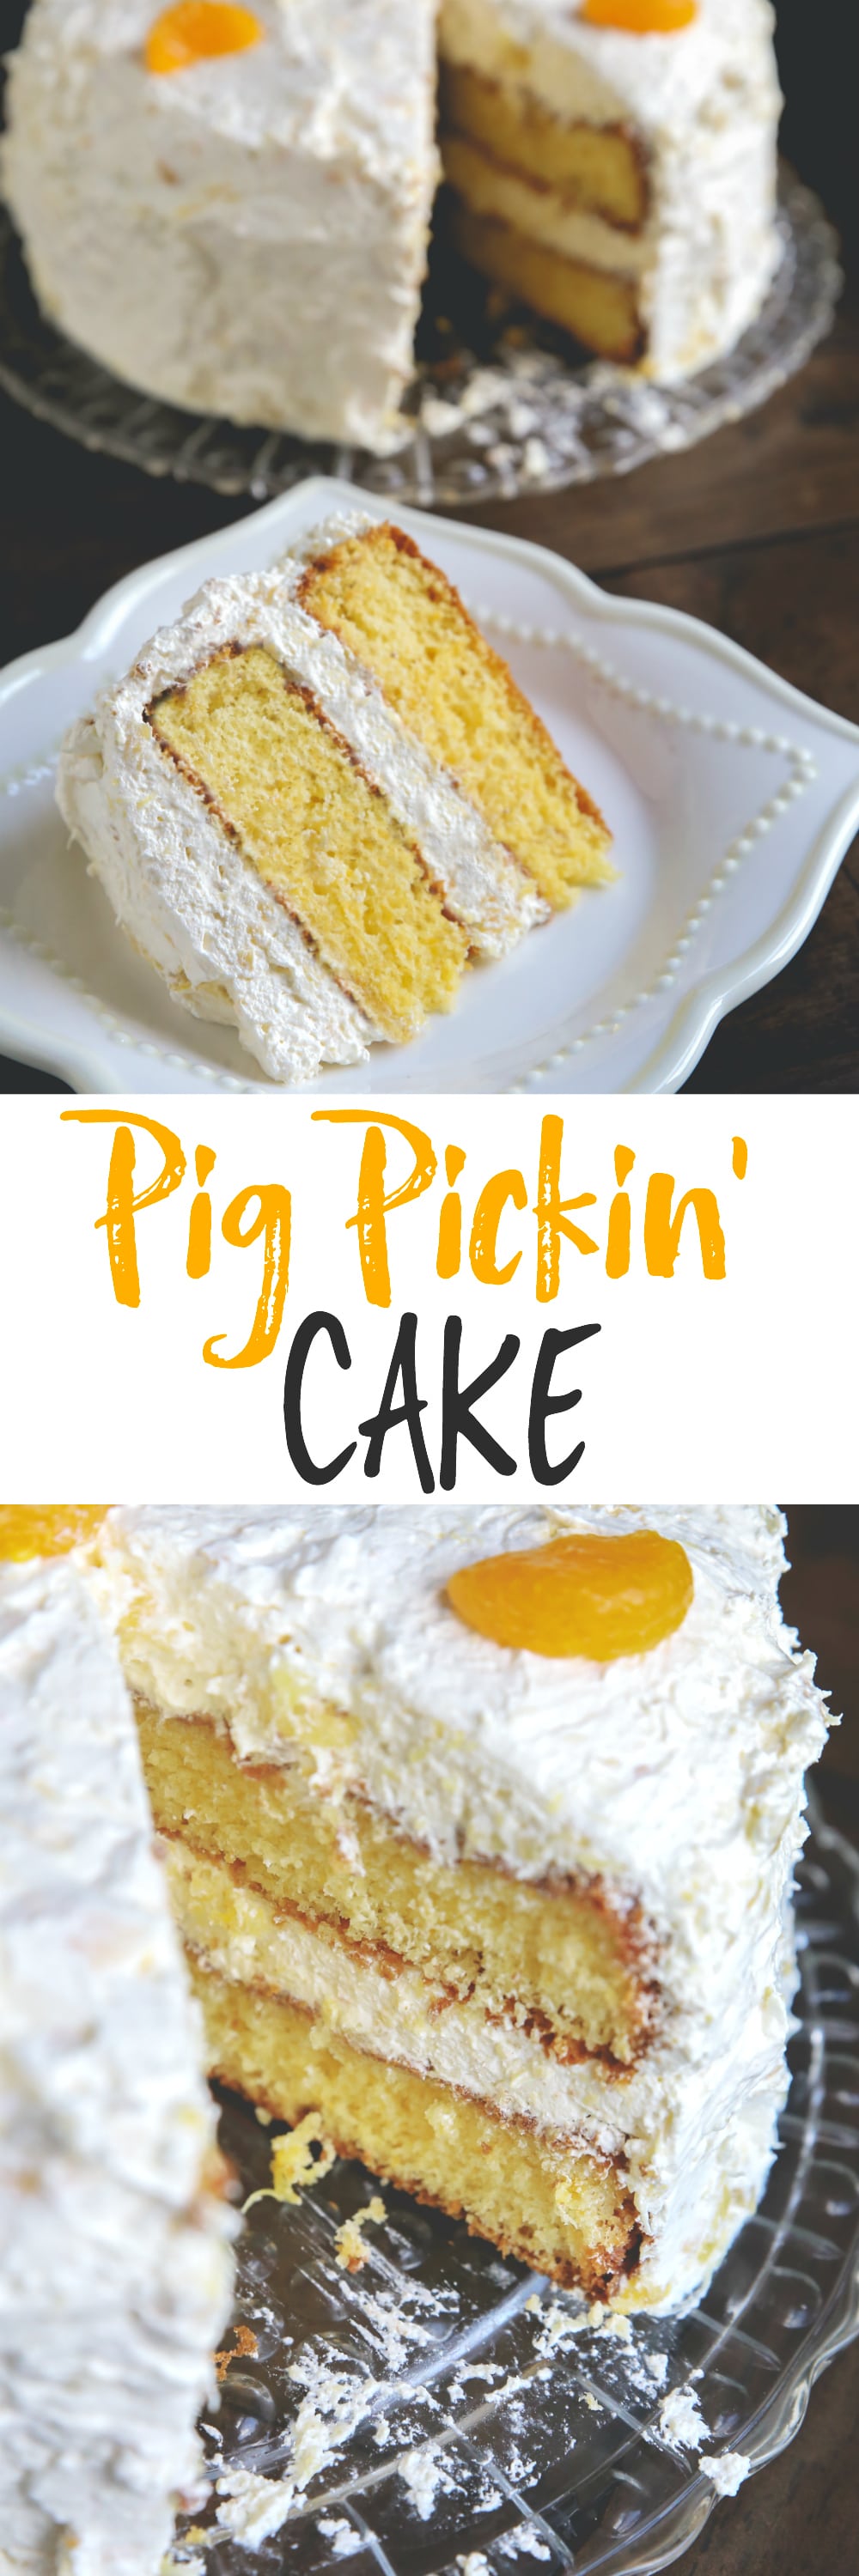 pig pickin cake